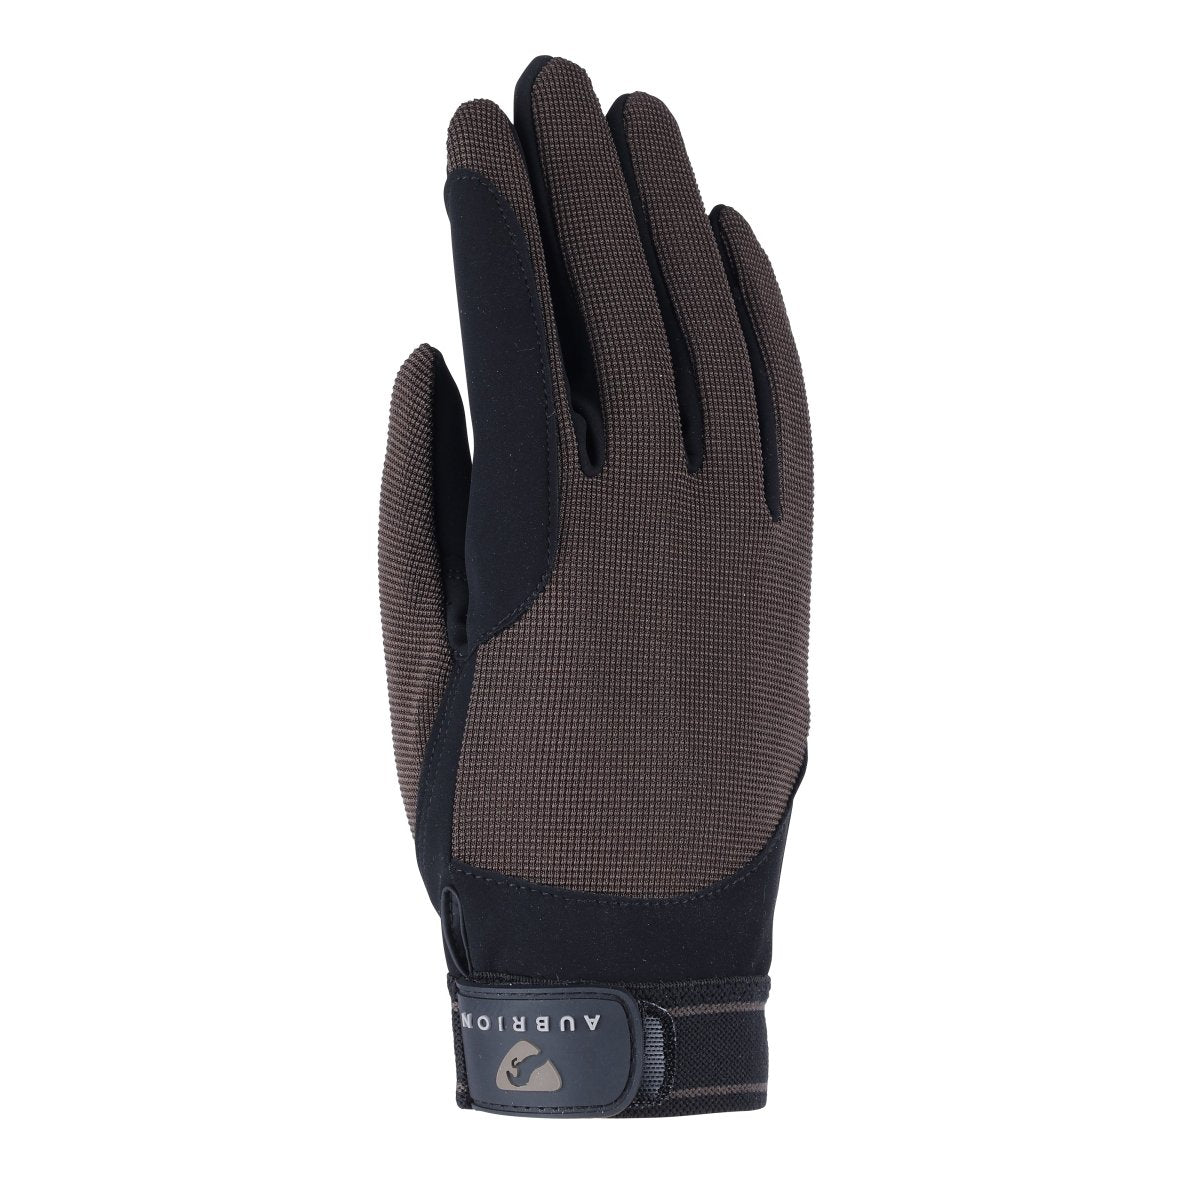 Aubrion Stratos SportFit Riding Gloves - Brown - XS